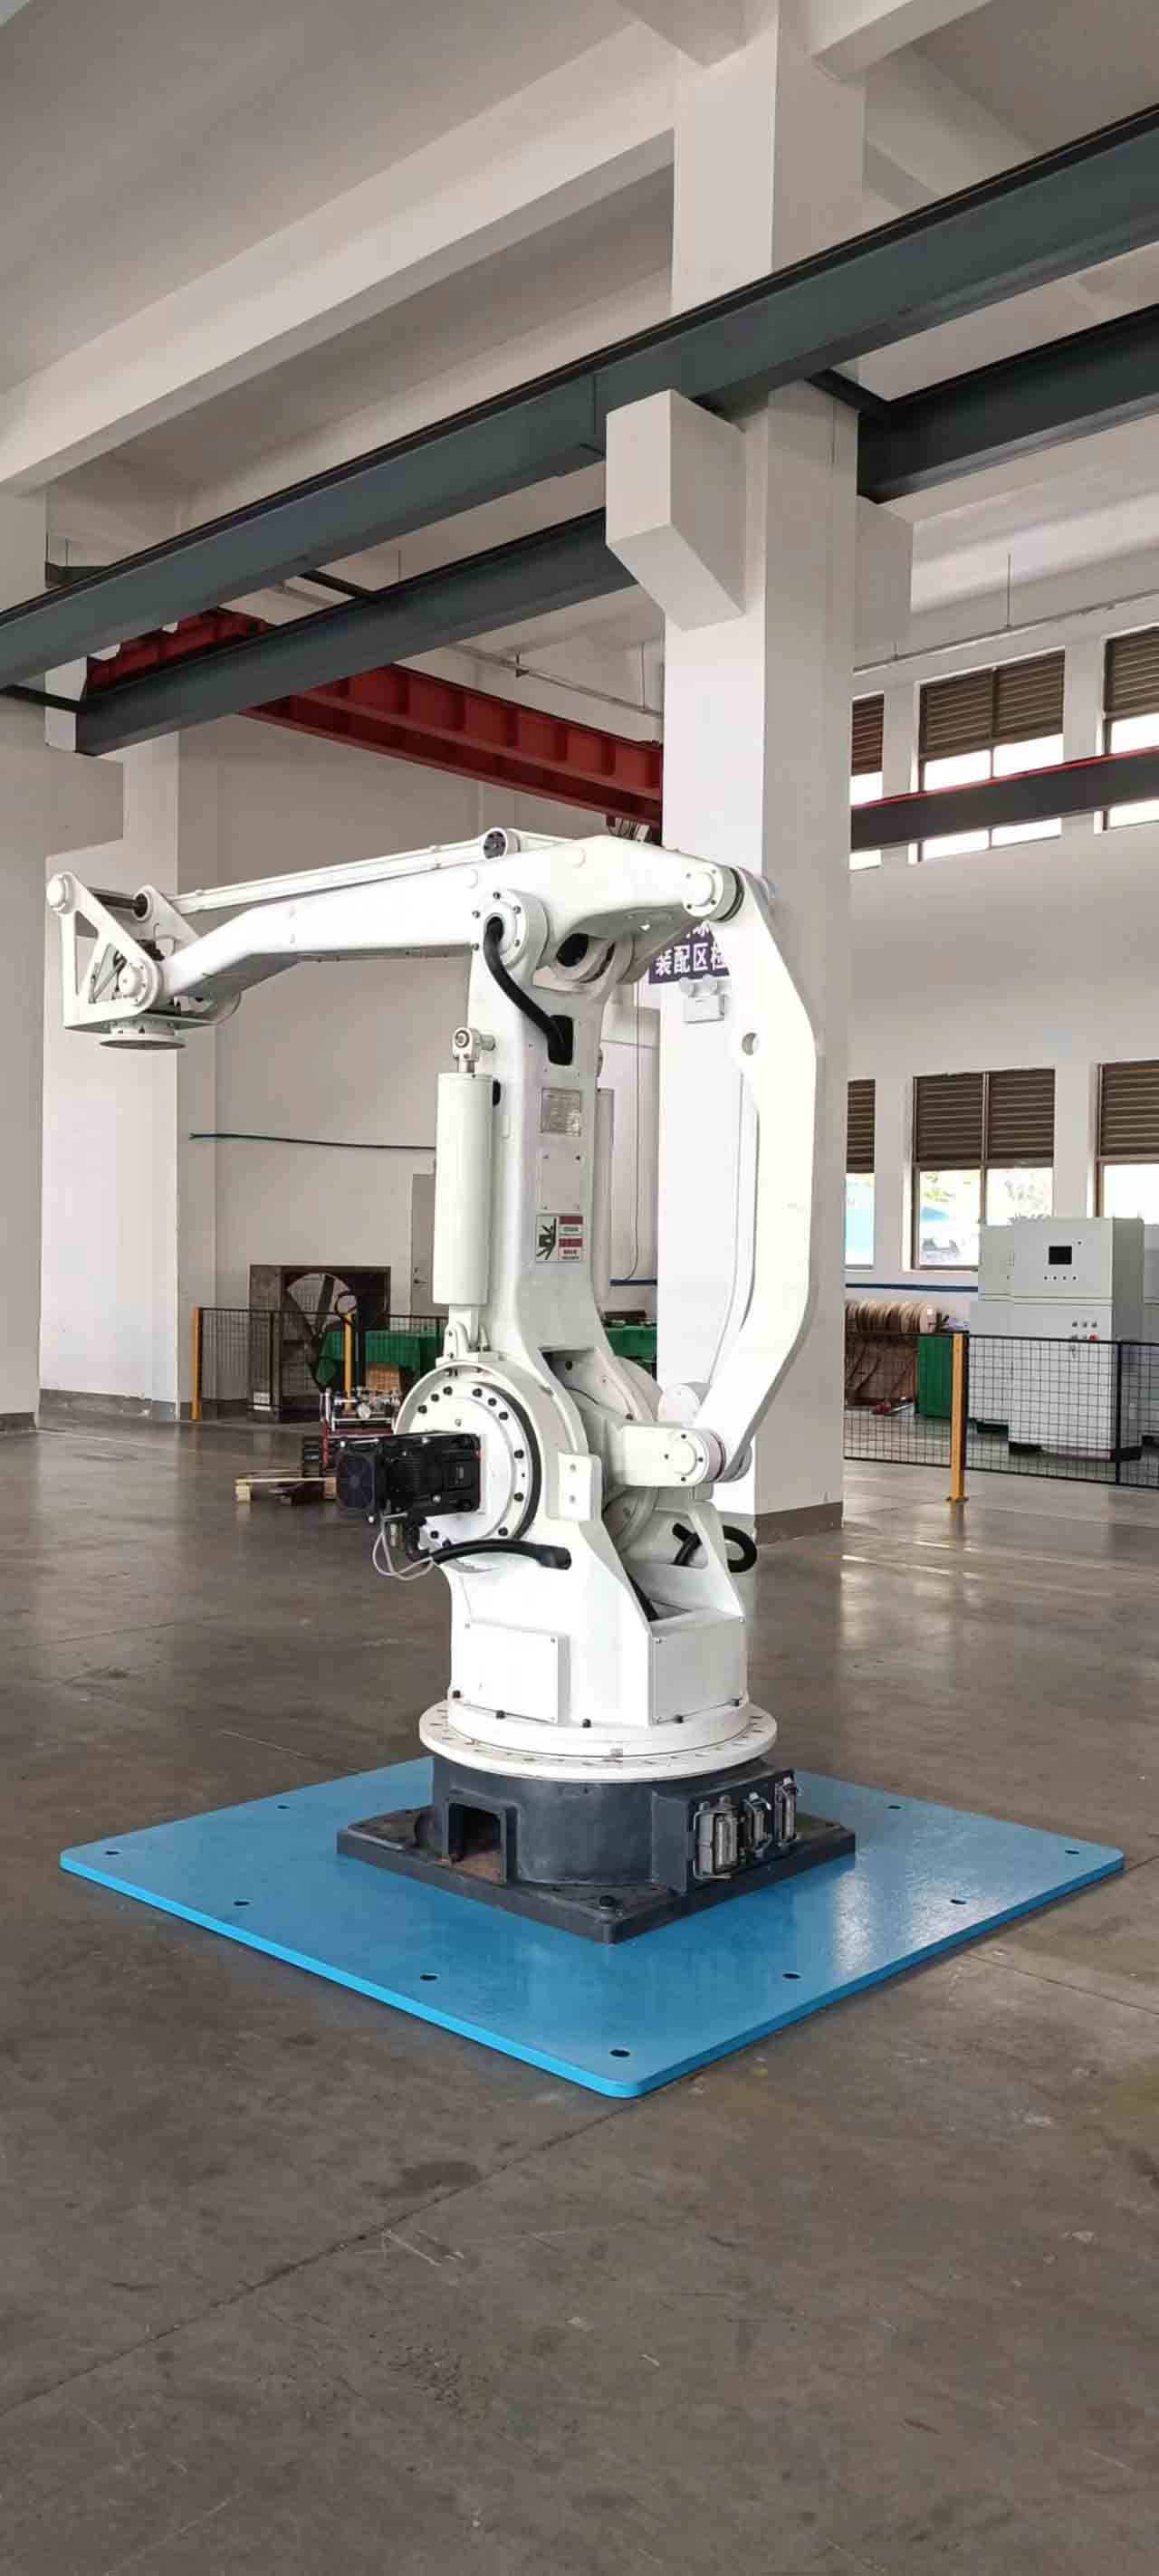 Робот-палетоукладчик грузоподъемностью 300 кг